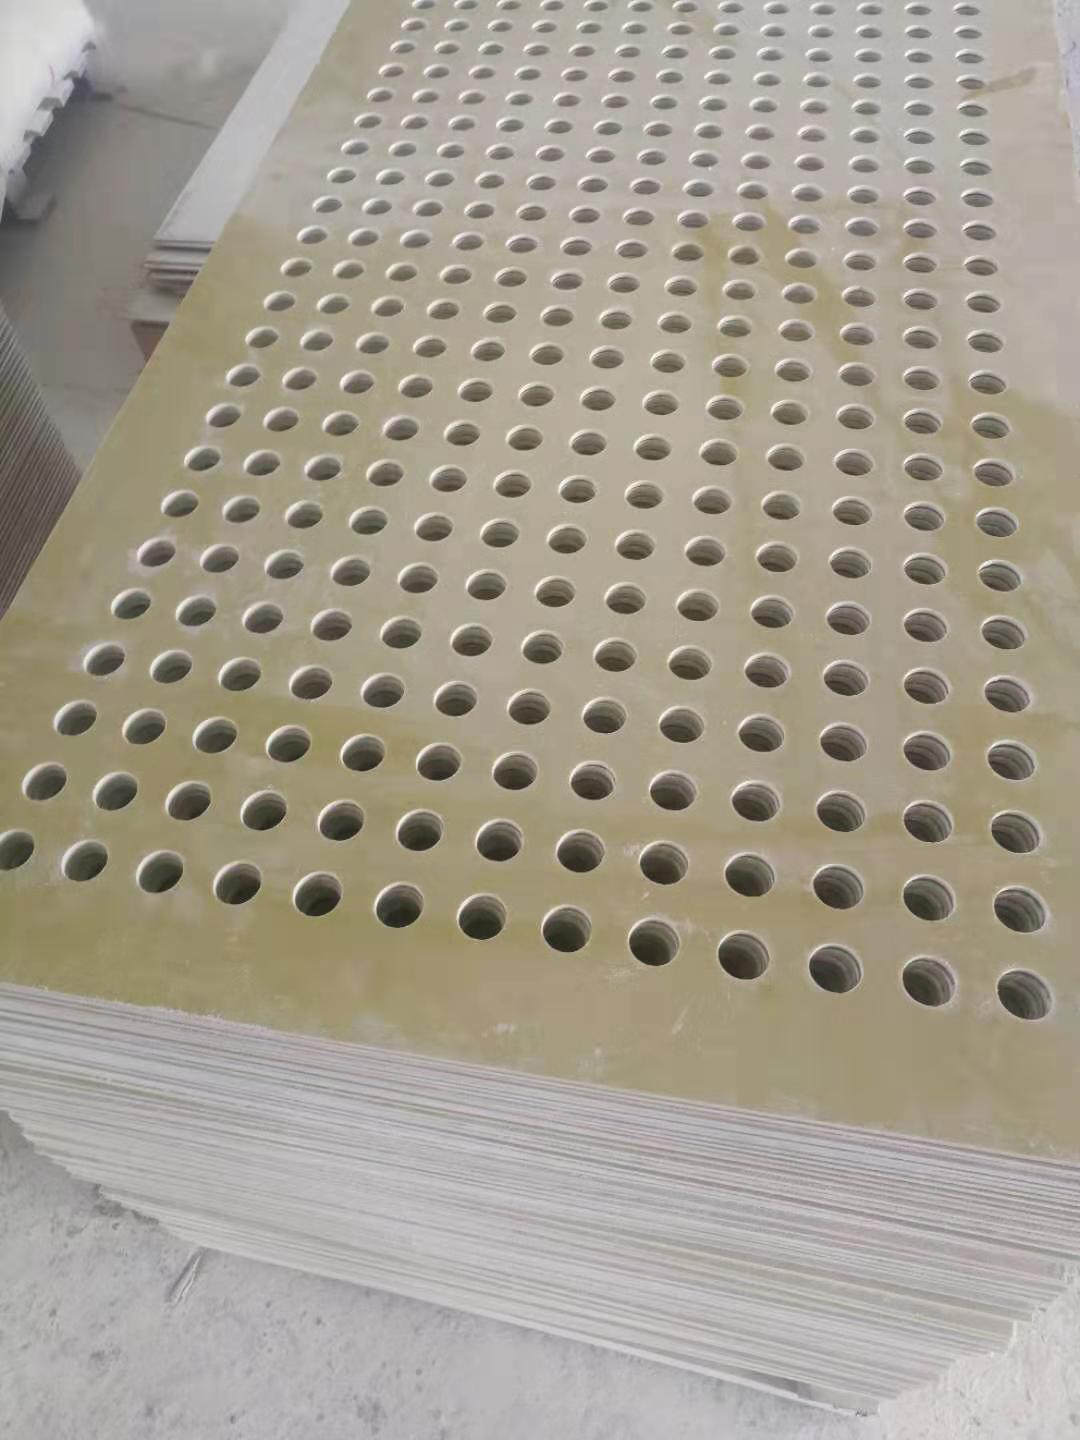 環氧板 環氧樹脂纖維板廠家 3240環氧板異形件  黃色絕緣板 醛層壓玻璃布板加工定做示例圖14